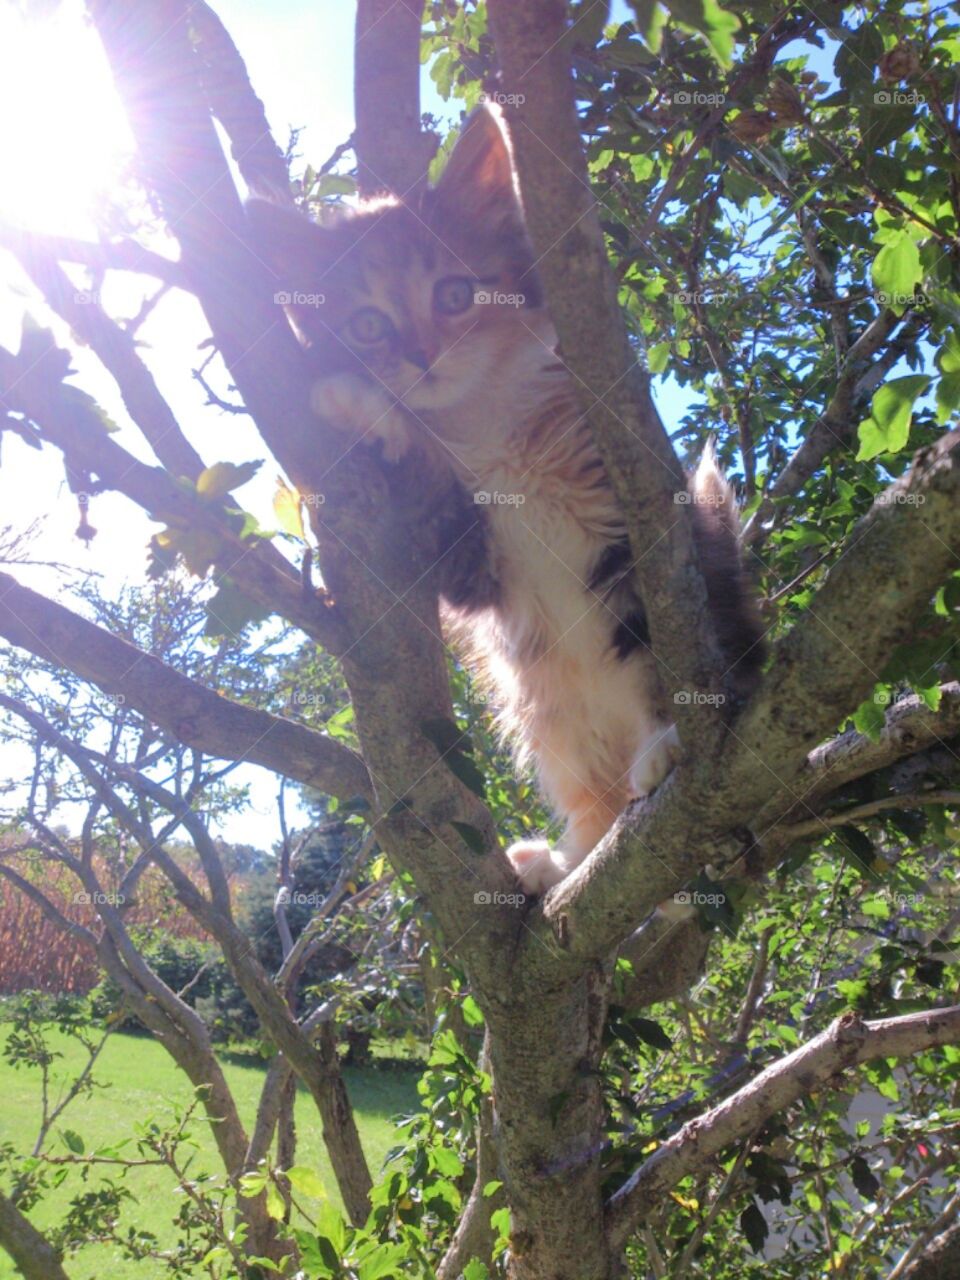 Kitty in tree. my kitty was adventurous 